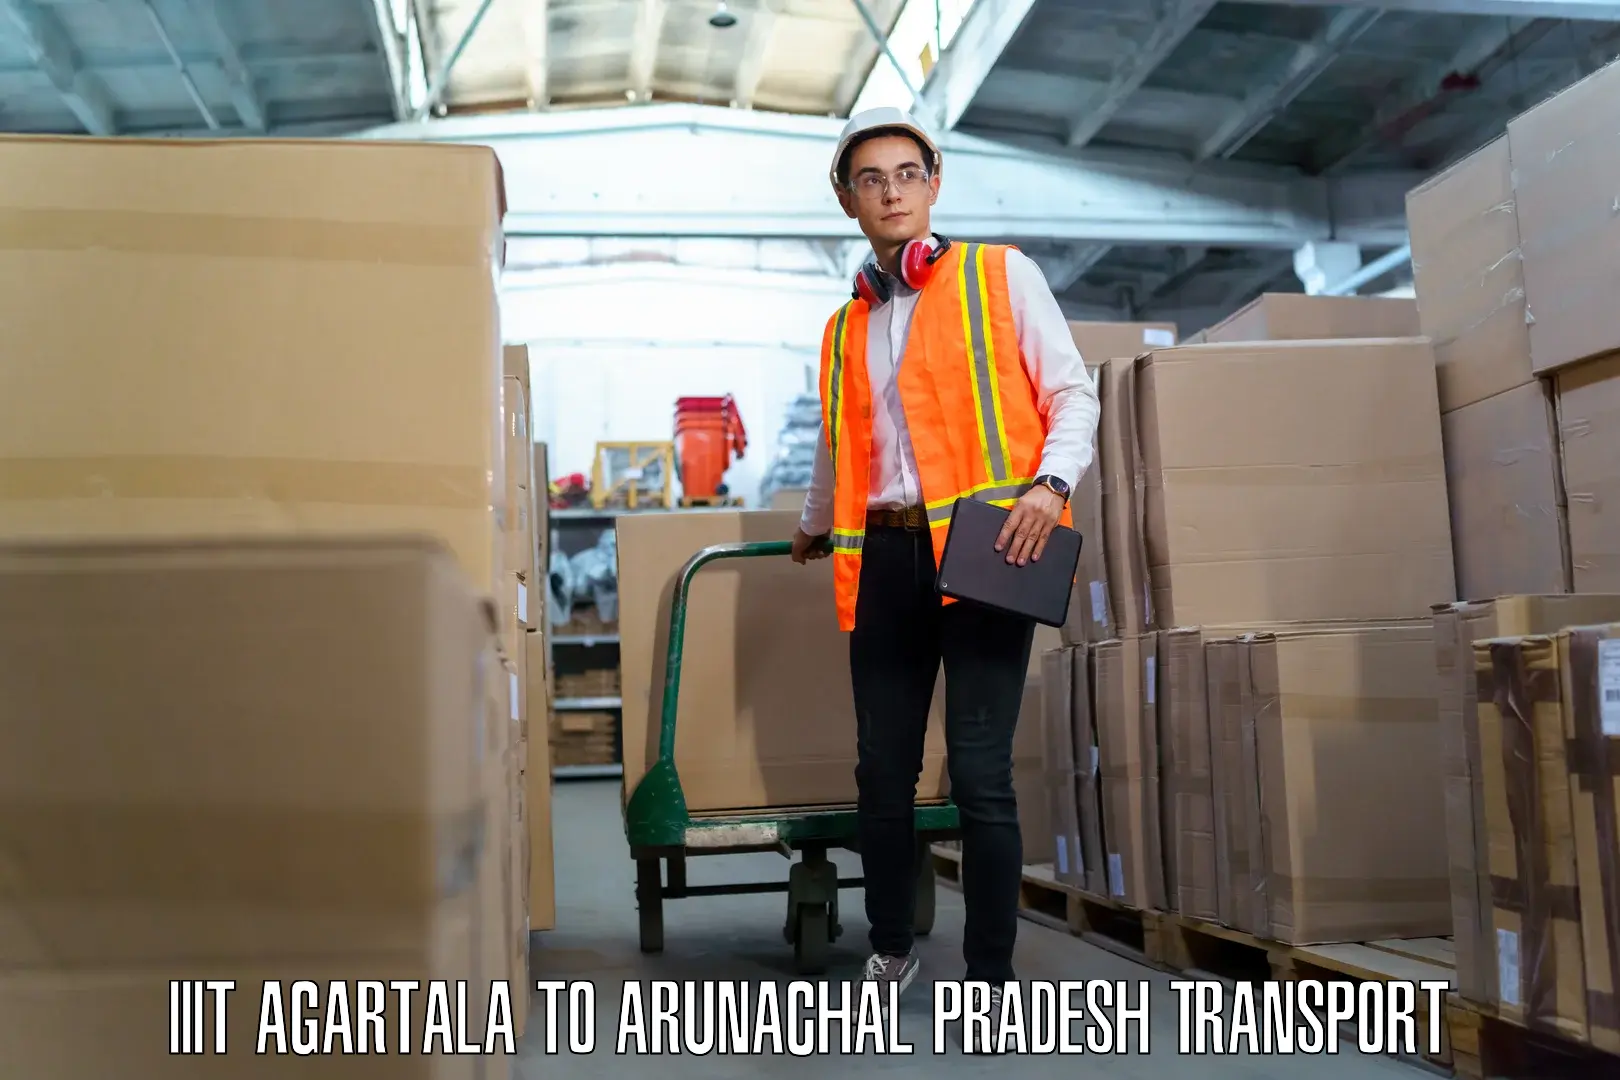 Two wheeler transport services in IIIT Agartala to Arunachal Pradesh